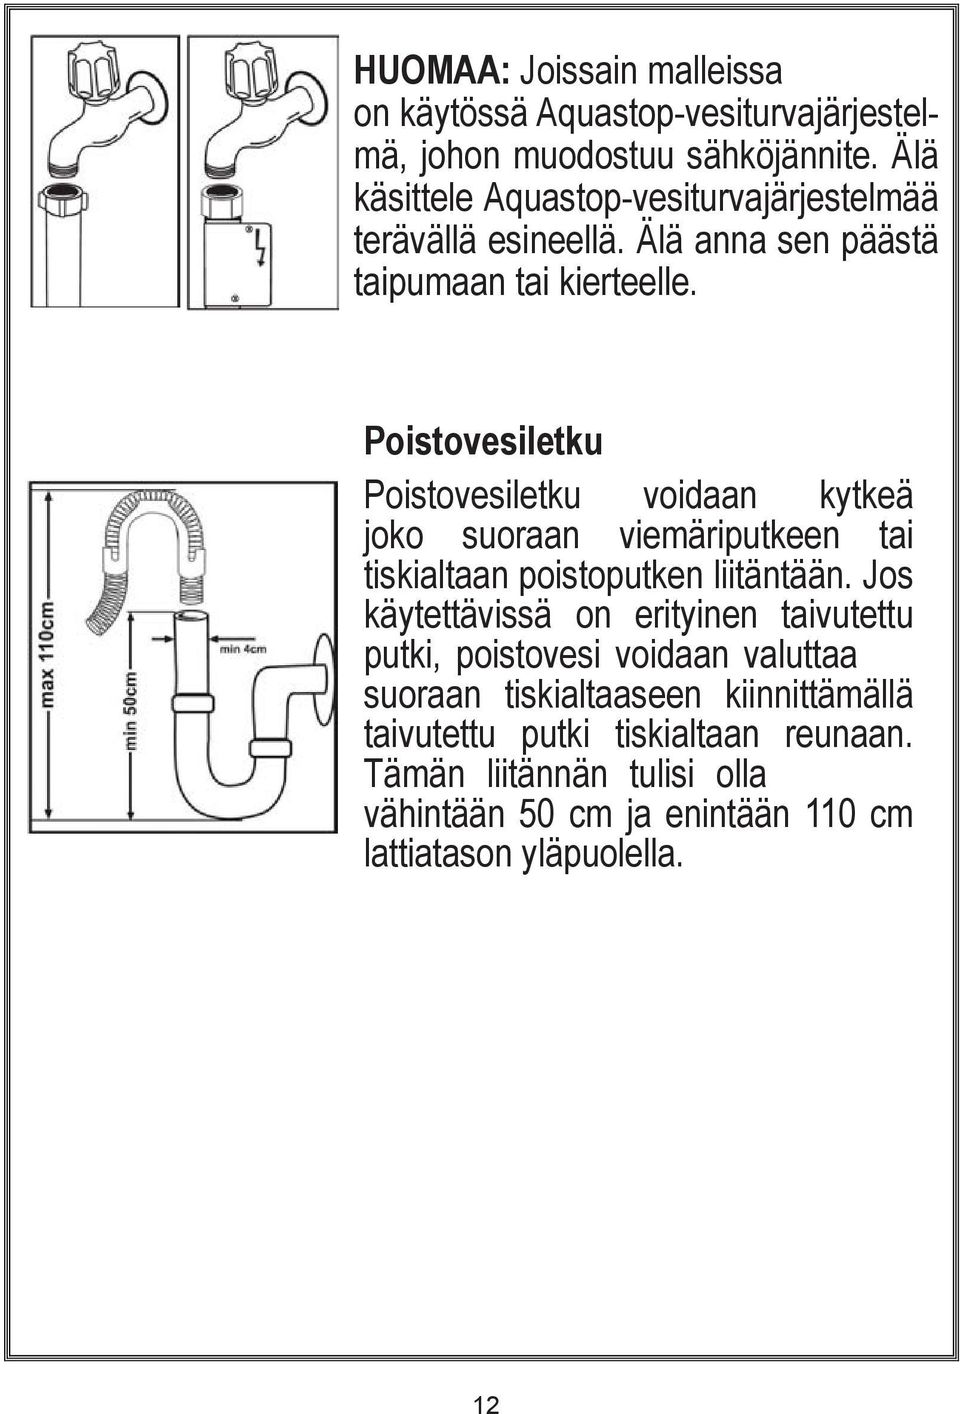 Poistovesiletku Poistovesiletku voidaan kytkeä joko suoraan viemäriputkeen tai tiskialtaan poistoputken liitäntään.